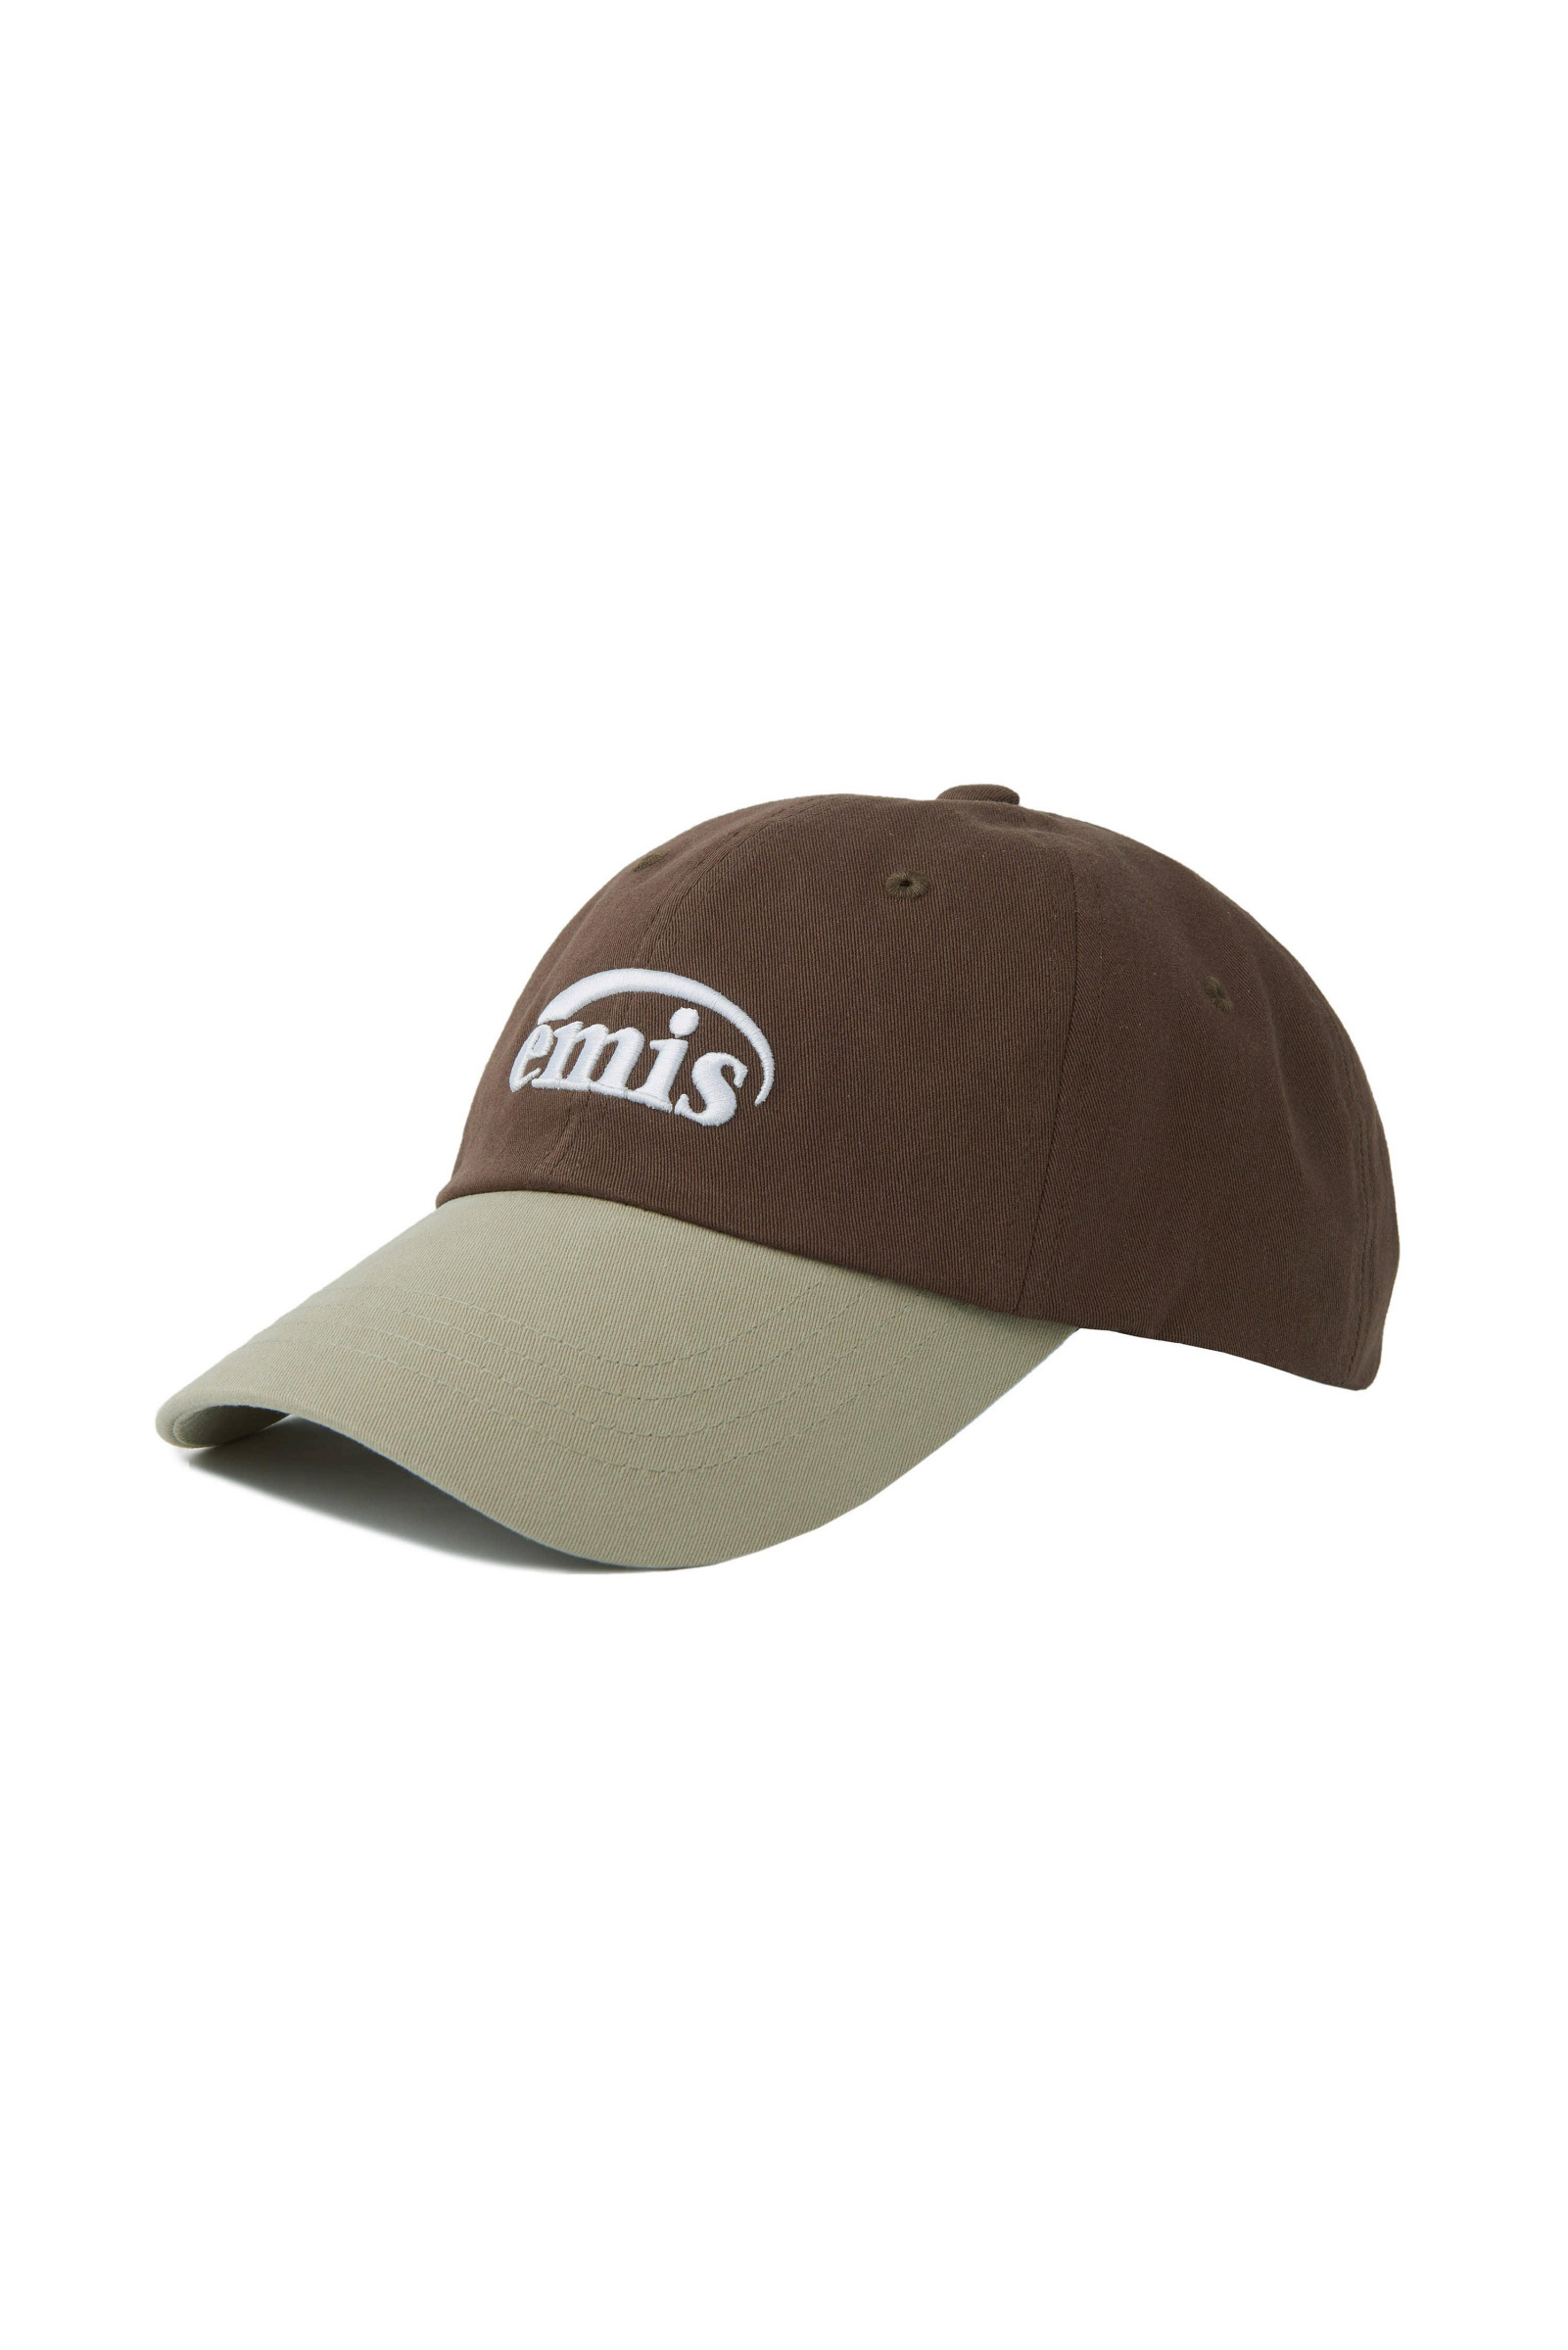 保證正品EMIS NEW LOGO MIX BALL CAP 刺繡超熱門老帽帽子